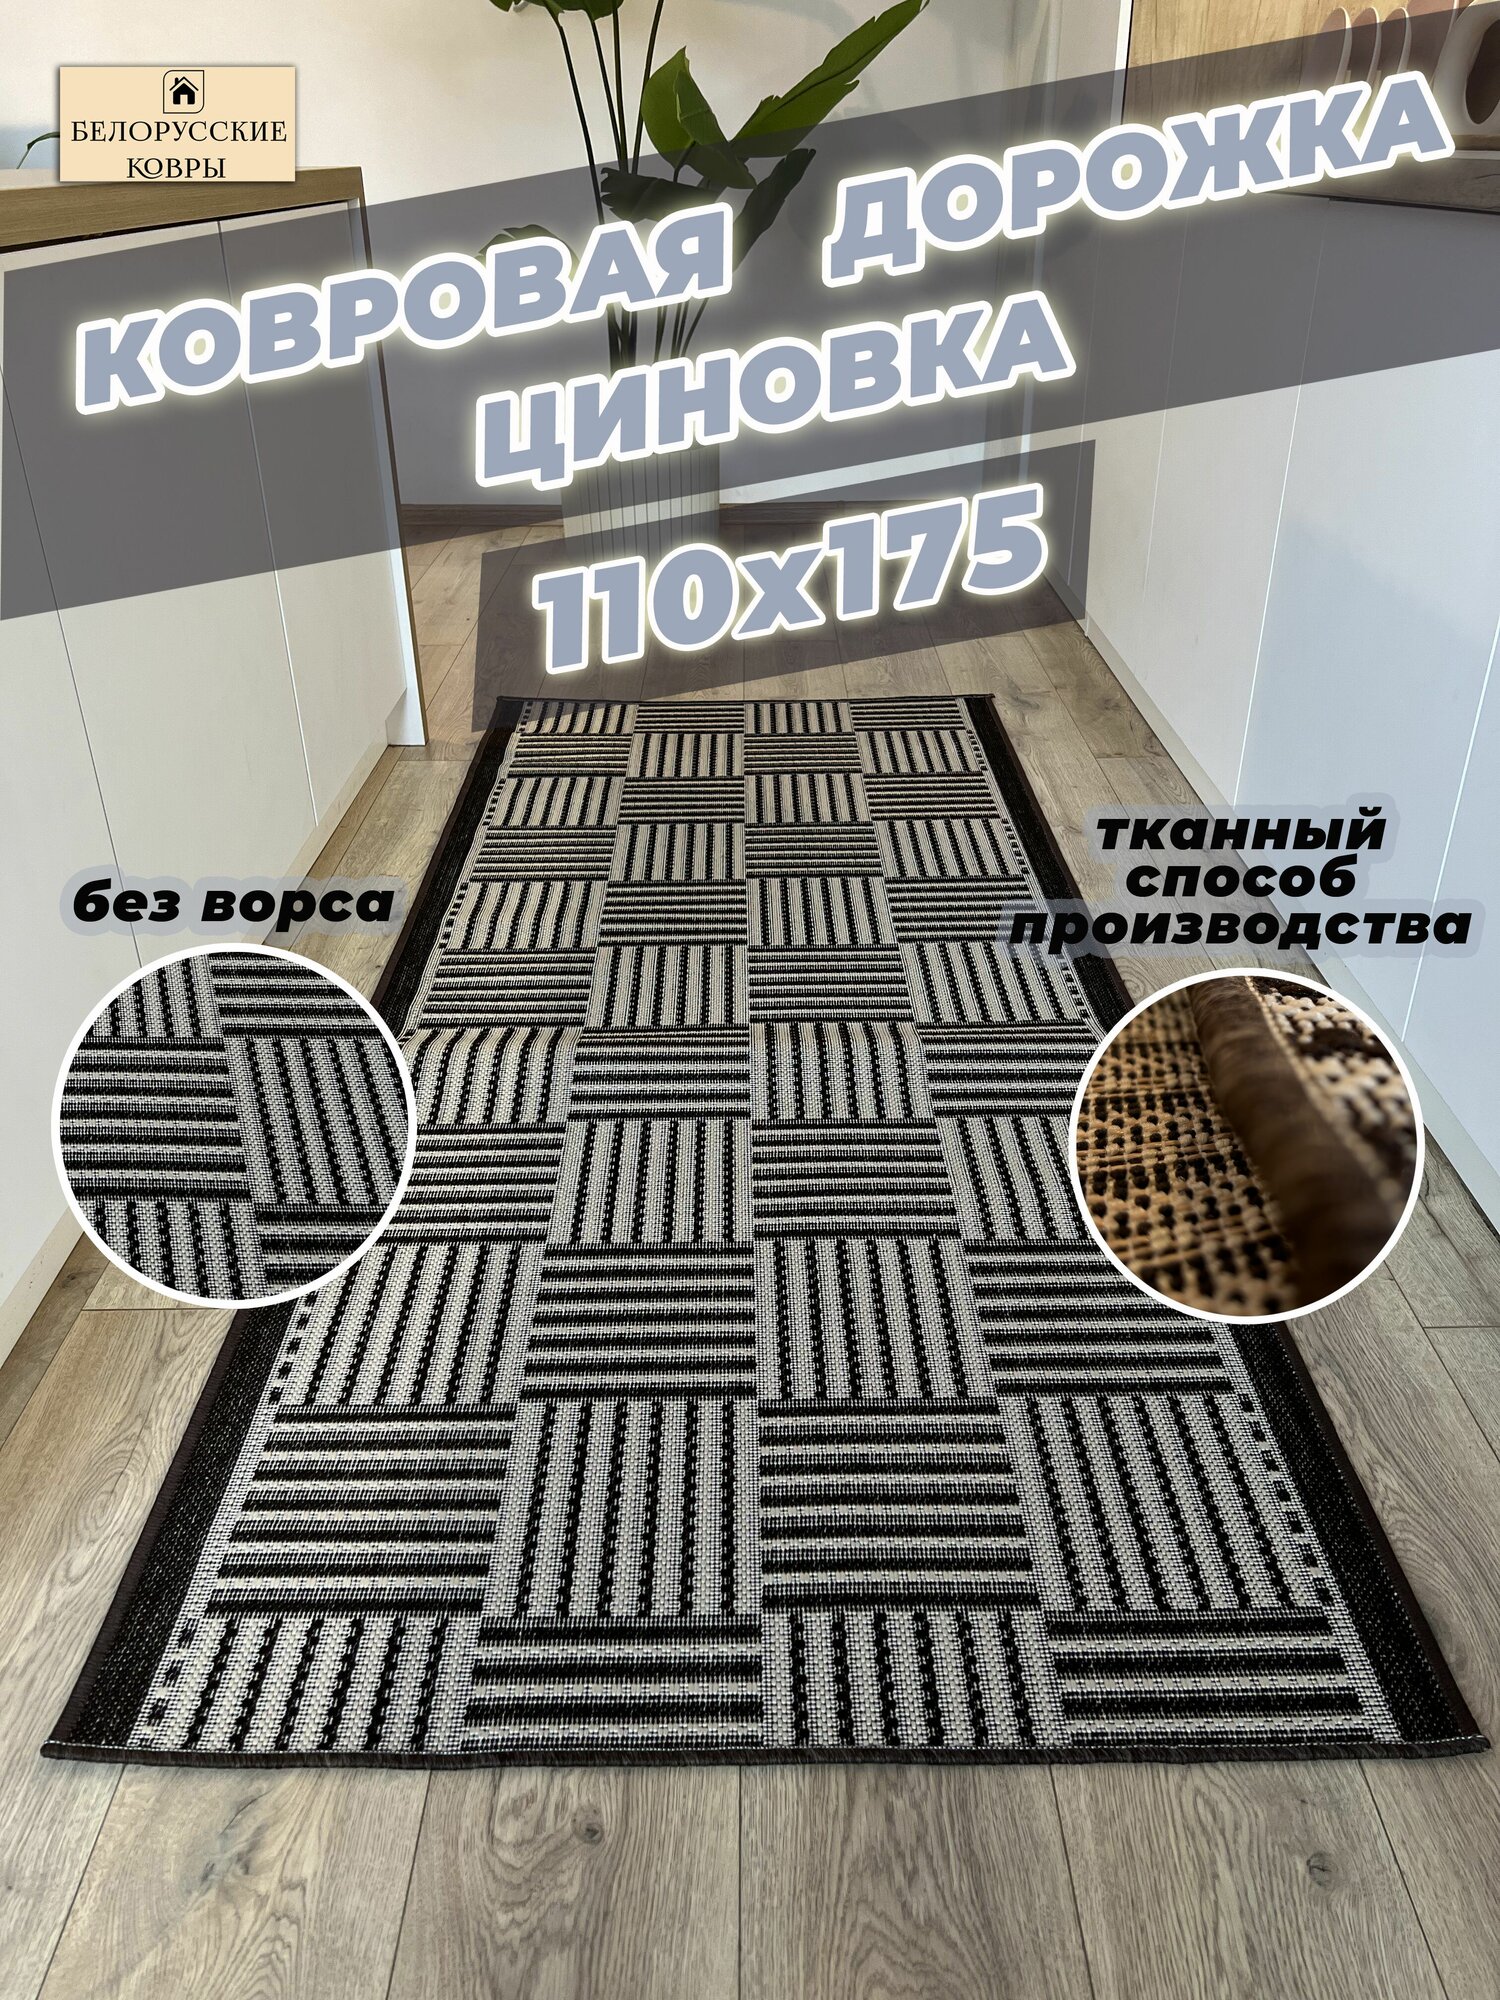 Белорусские ковры, ковровая дорожка циновка 110х175см./1,1х1,75м.